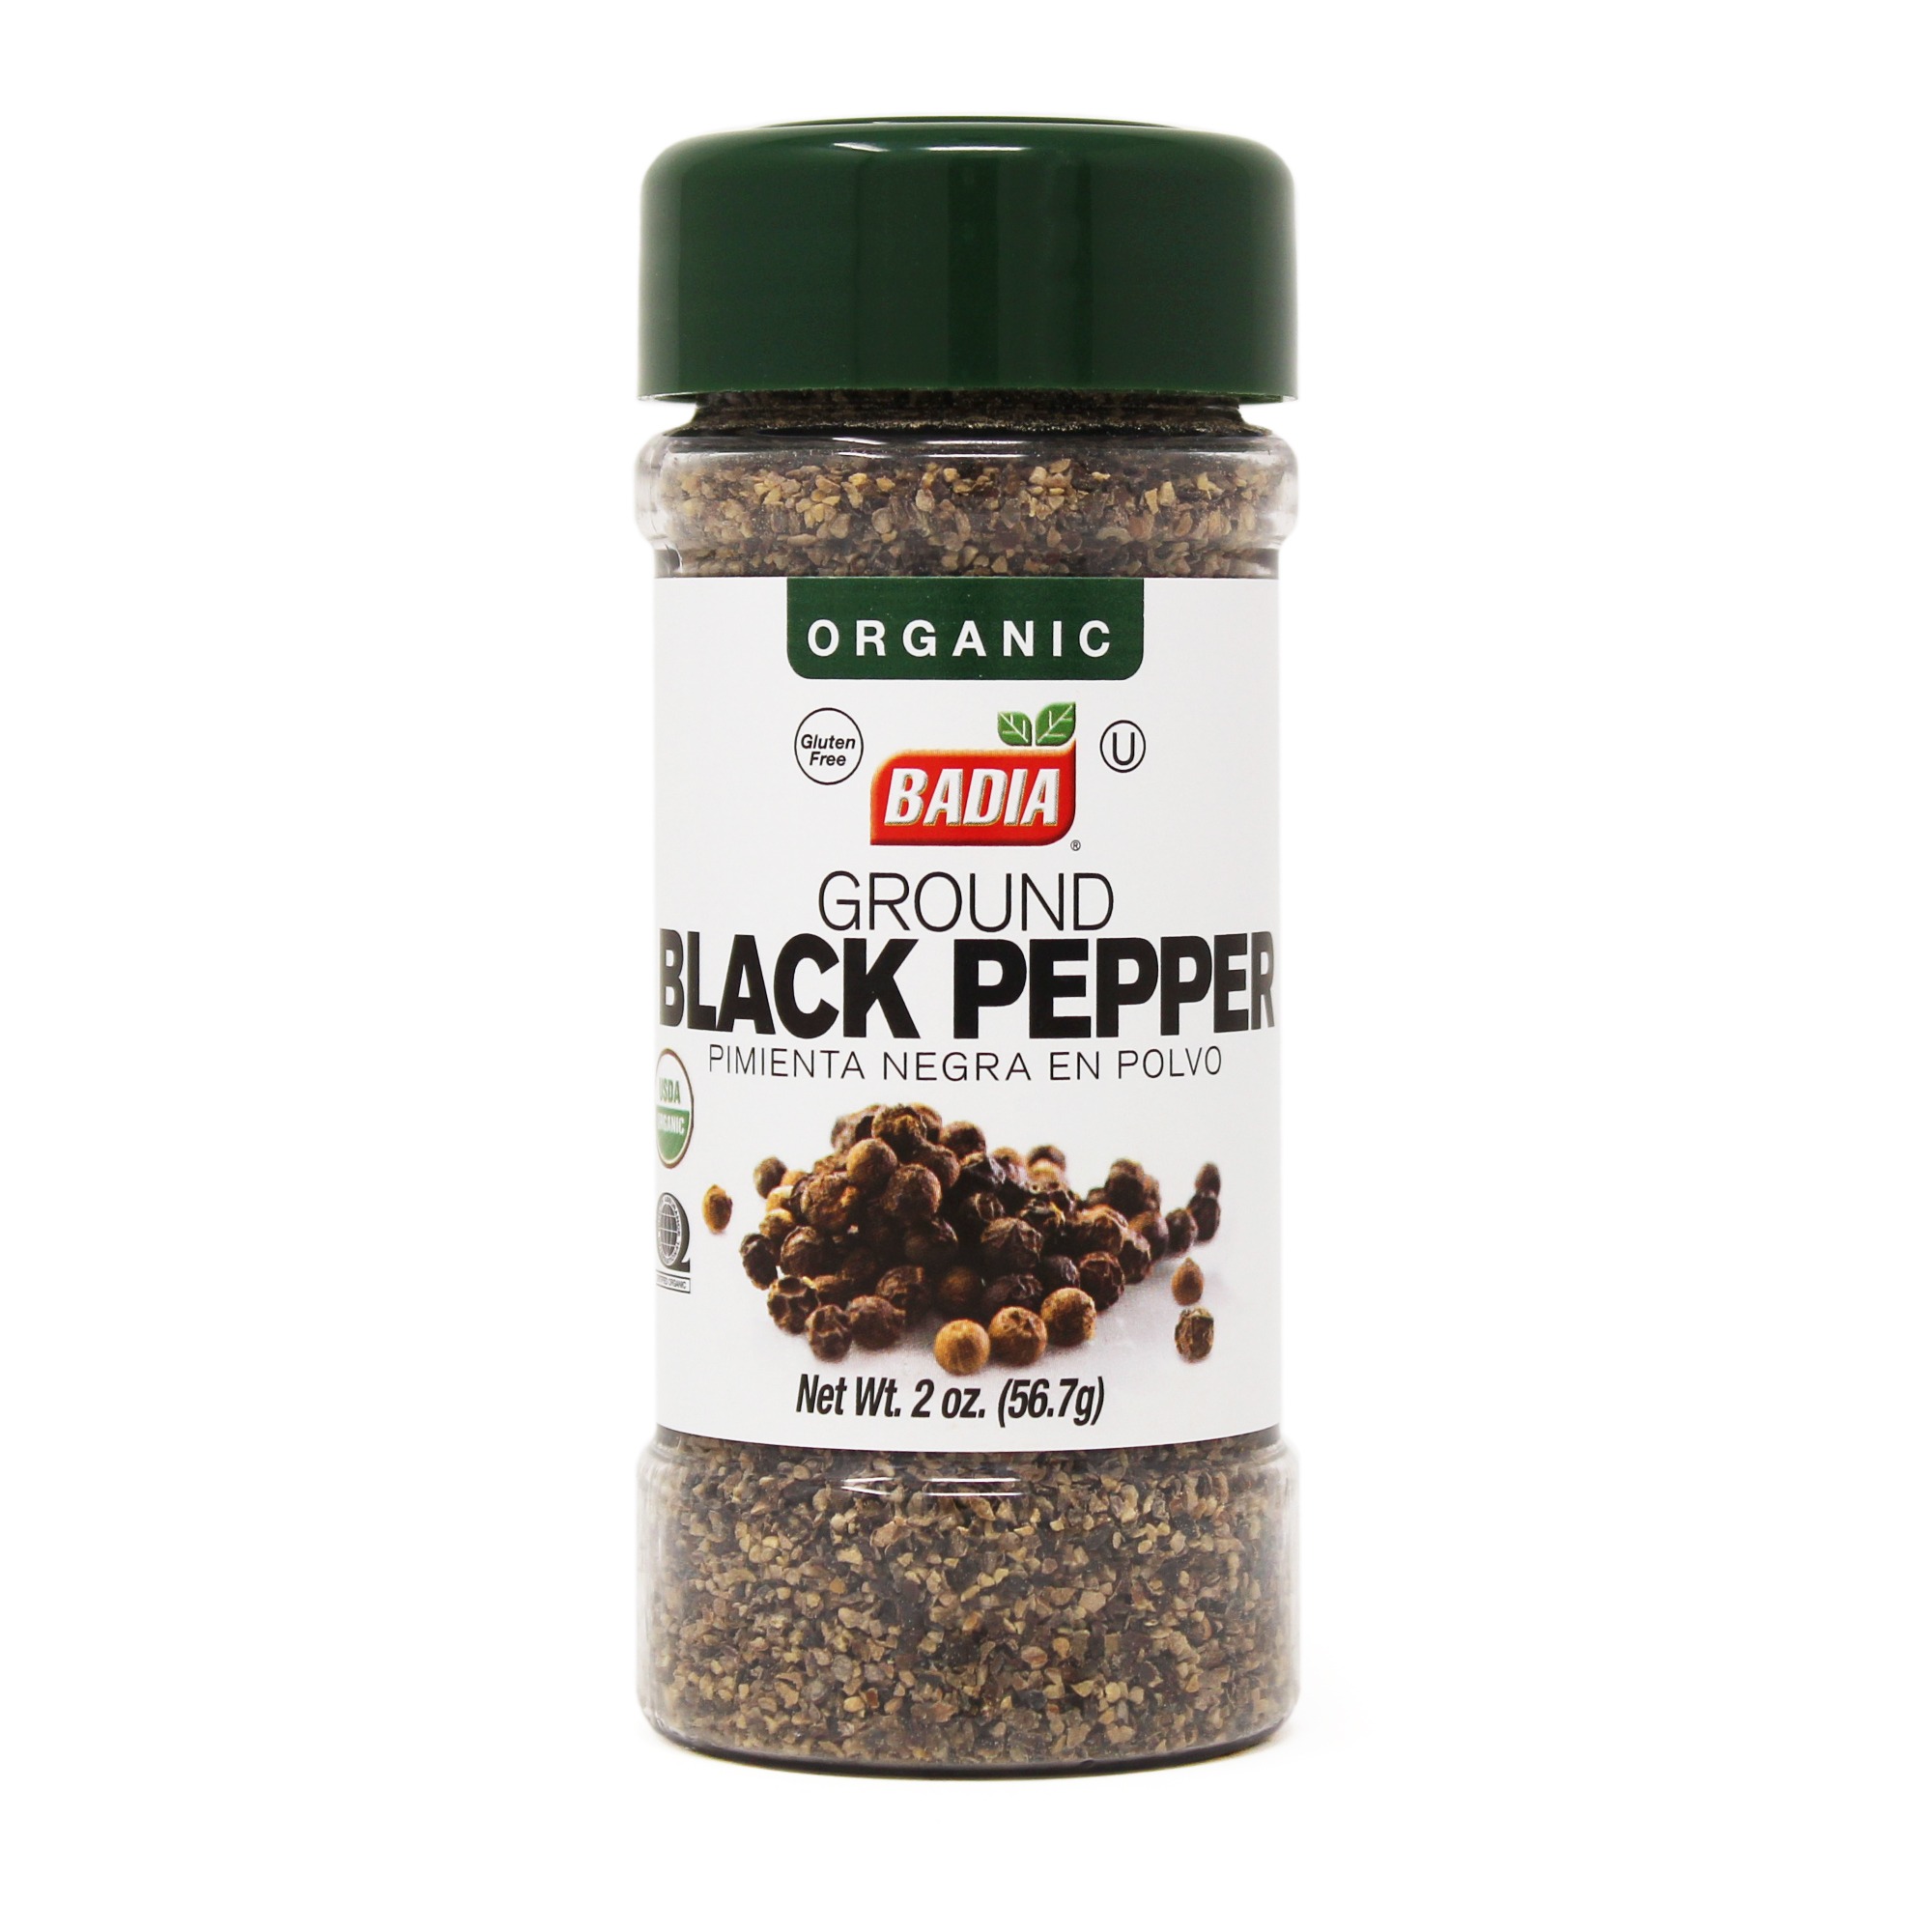 Grinder Black Pepper - Badia Spices